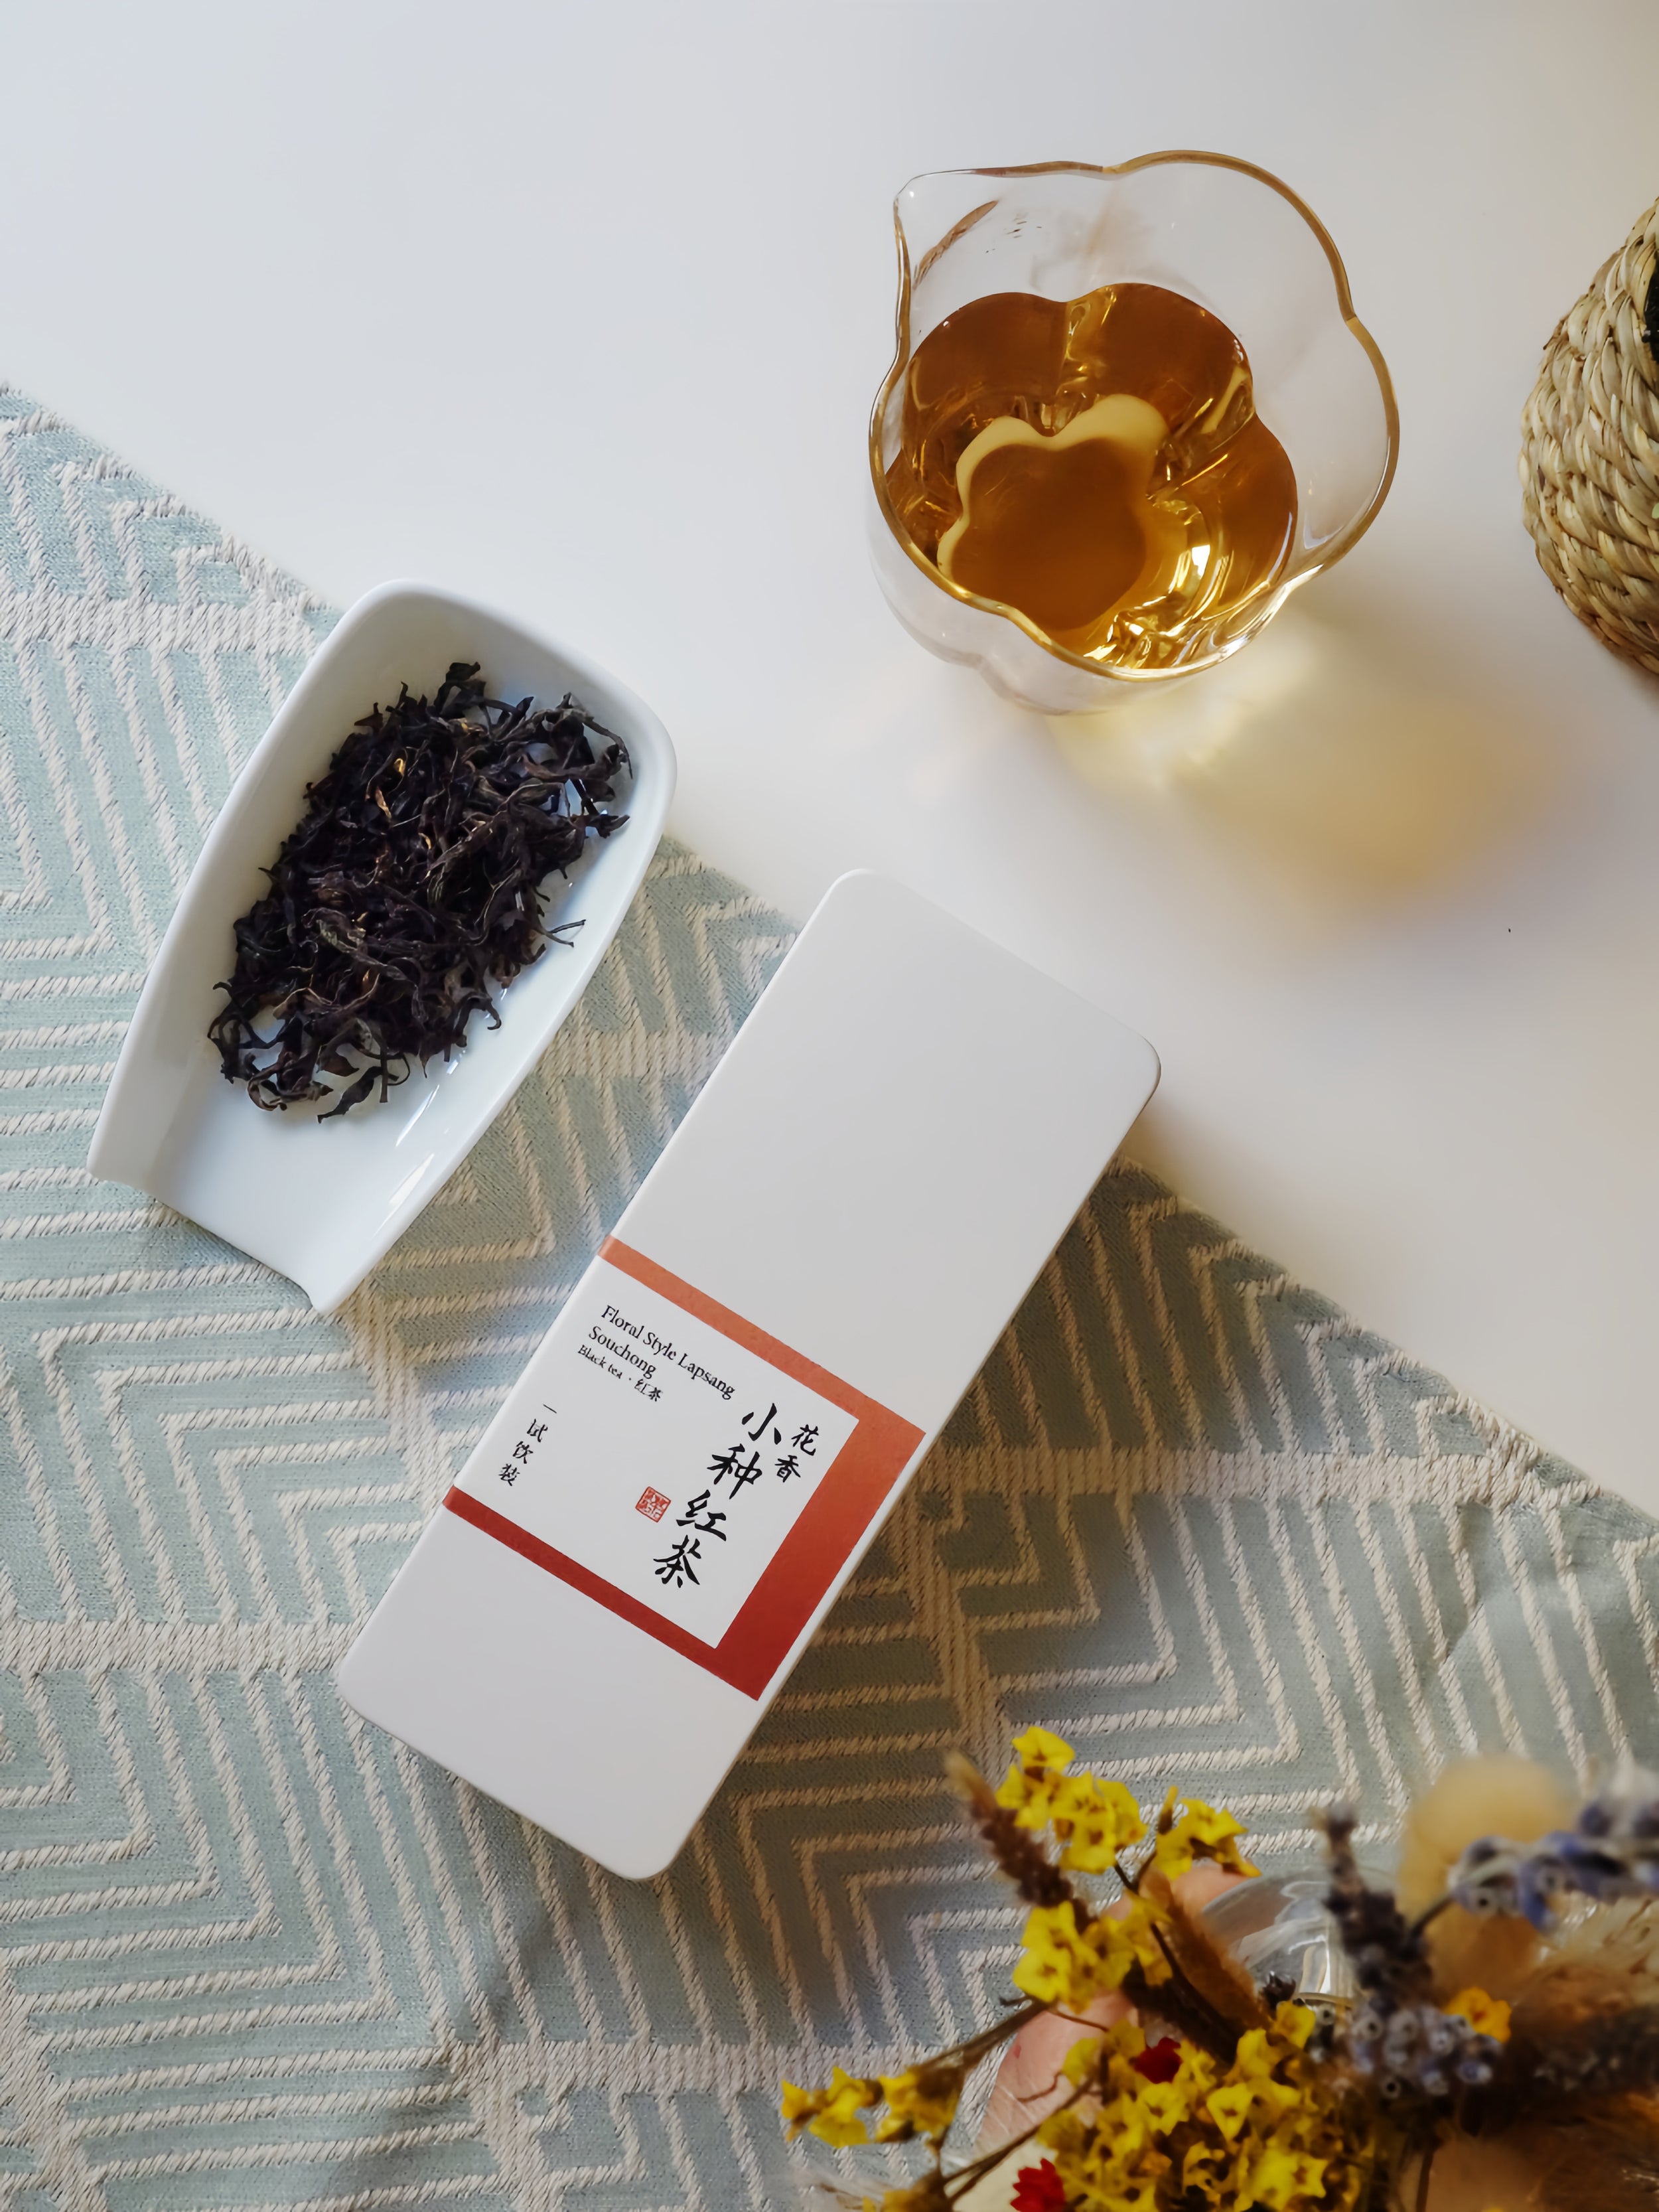 Lapsang Souchong (floral style)：Super cost-effective " original black tea"!